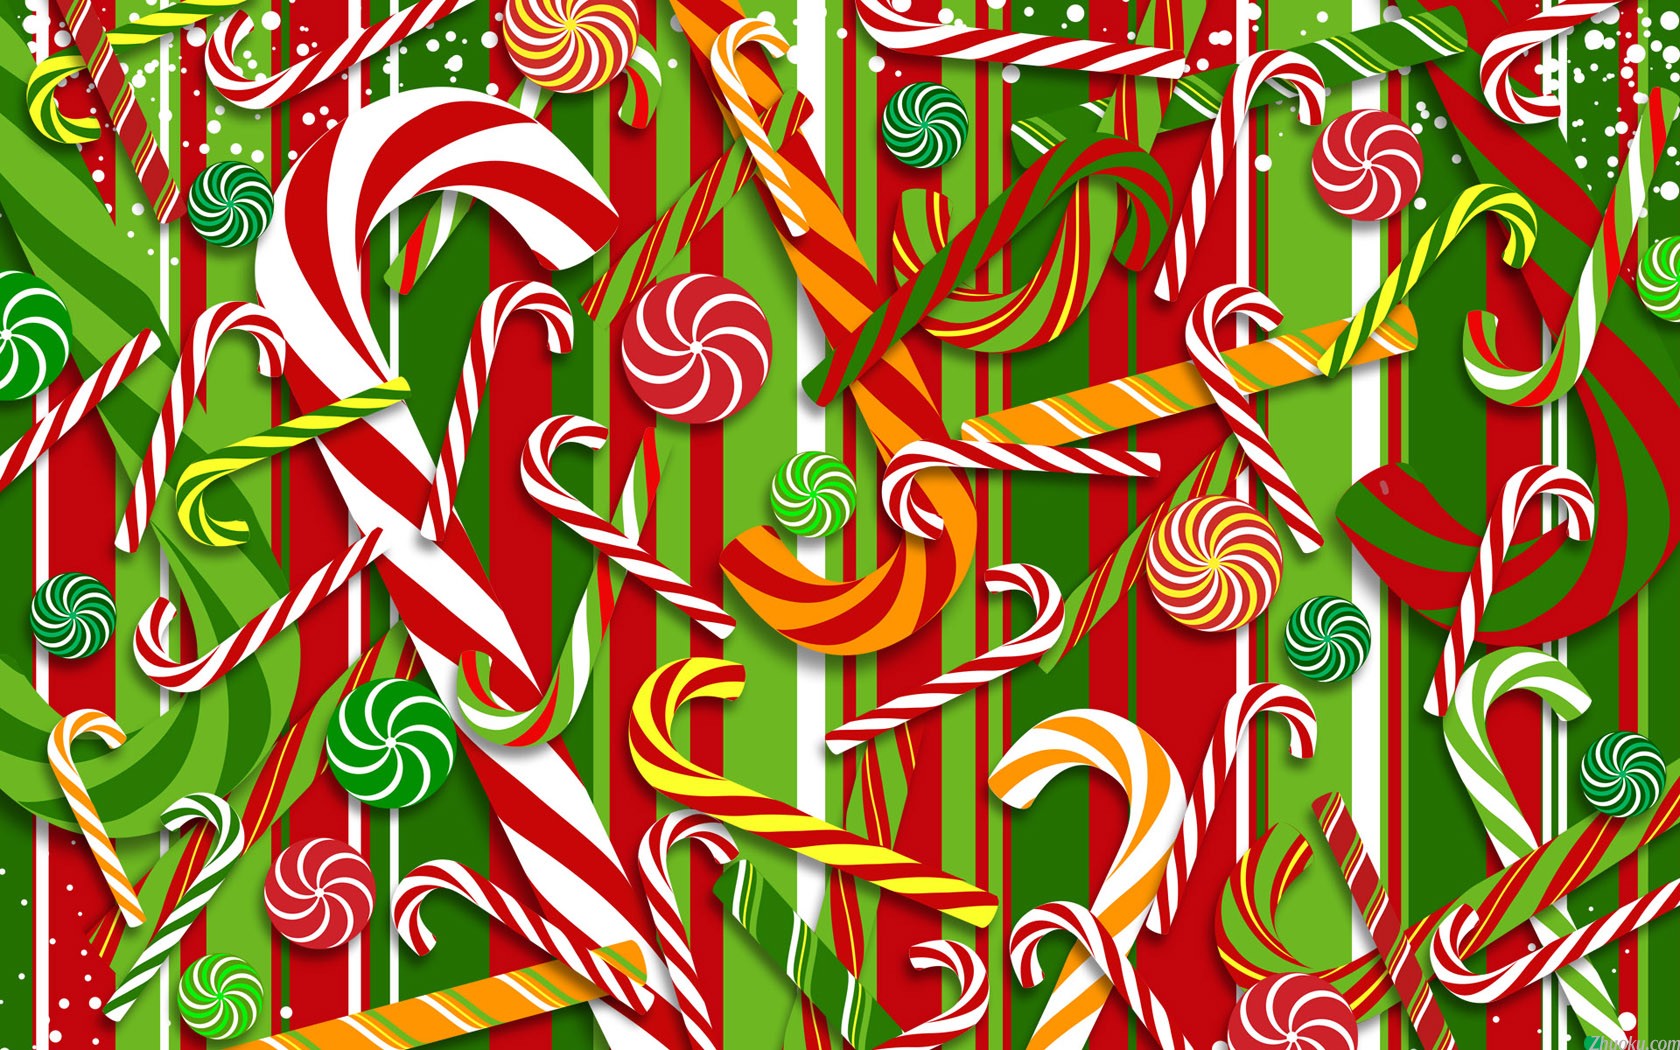 壁纸1680x1050电脑绘制圣诞主题 壁纸17壁纸 电脑绘制圣诞主题壁纸 电脑绘制圣诞主题图片 电脑绘制圣诞主题素材 设计壁纸 设计图库 设计图片素材桌面壁纸